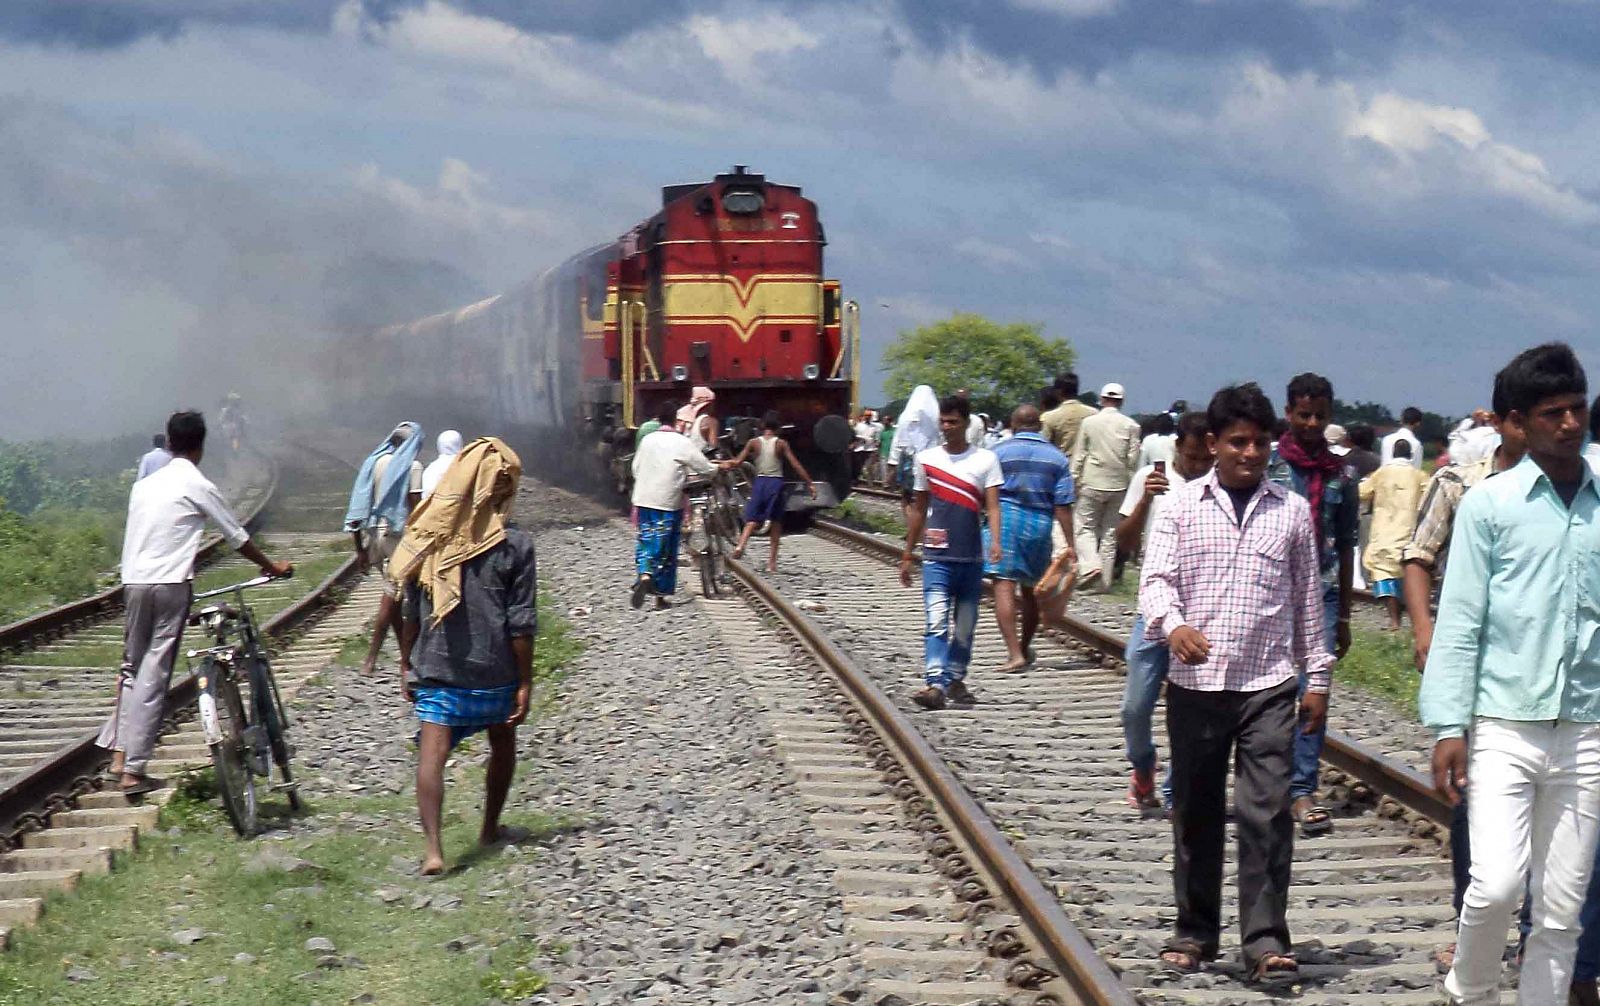 Un tren ha arrollado a una treintena de peregrinos que caminaban por las vías en el noreste de India.